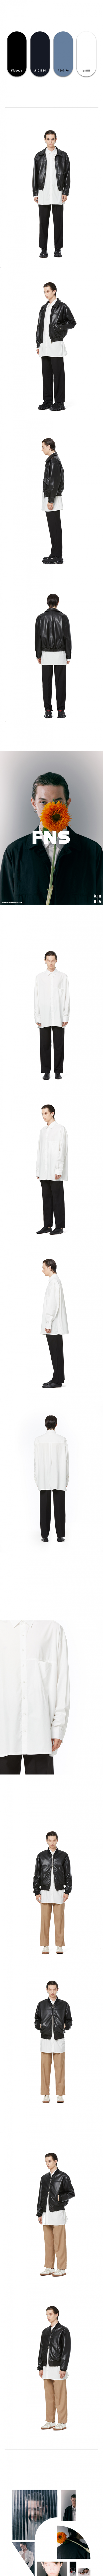 파나컬트(FANA CULT) 오버사이즈 텐셀 라인 셔츠 - WHITE